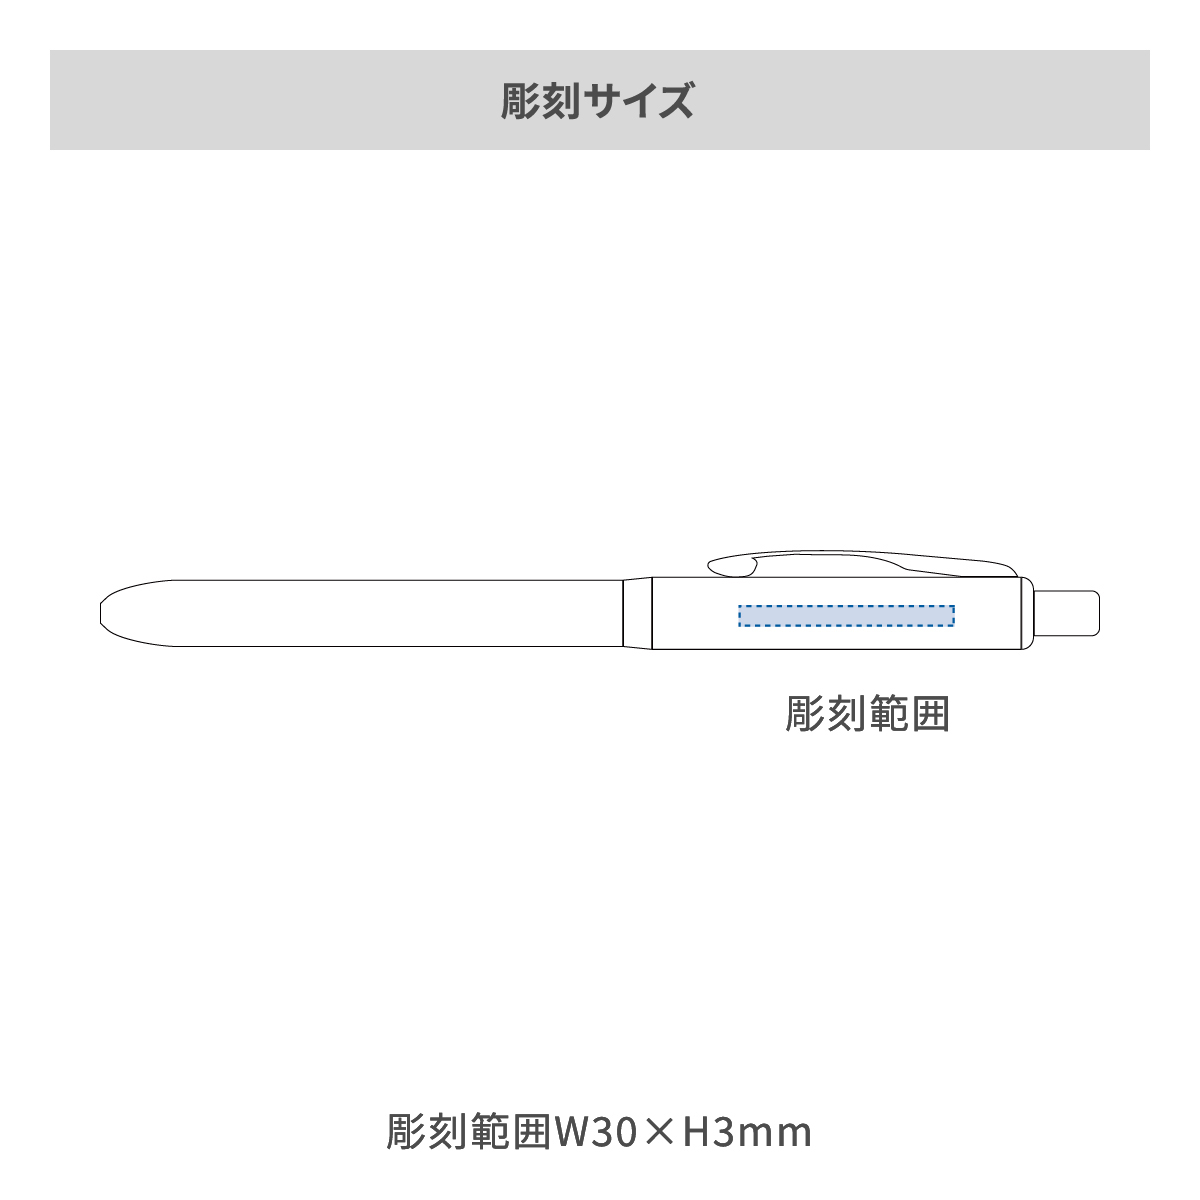 【短納期】パーカー ソネット オリジナル マルチファンクションペン の名入れ範囲